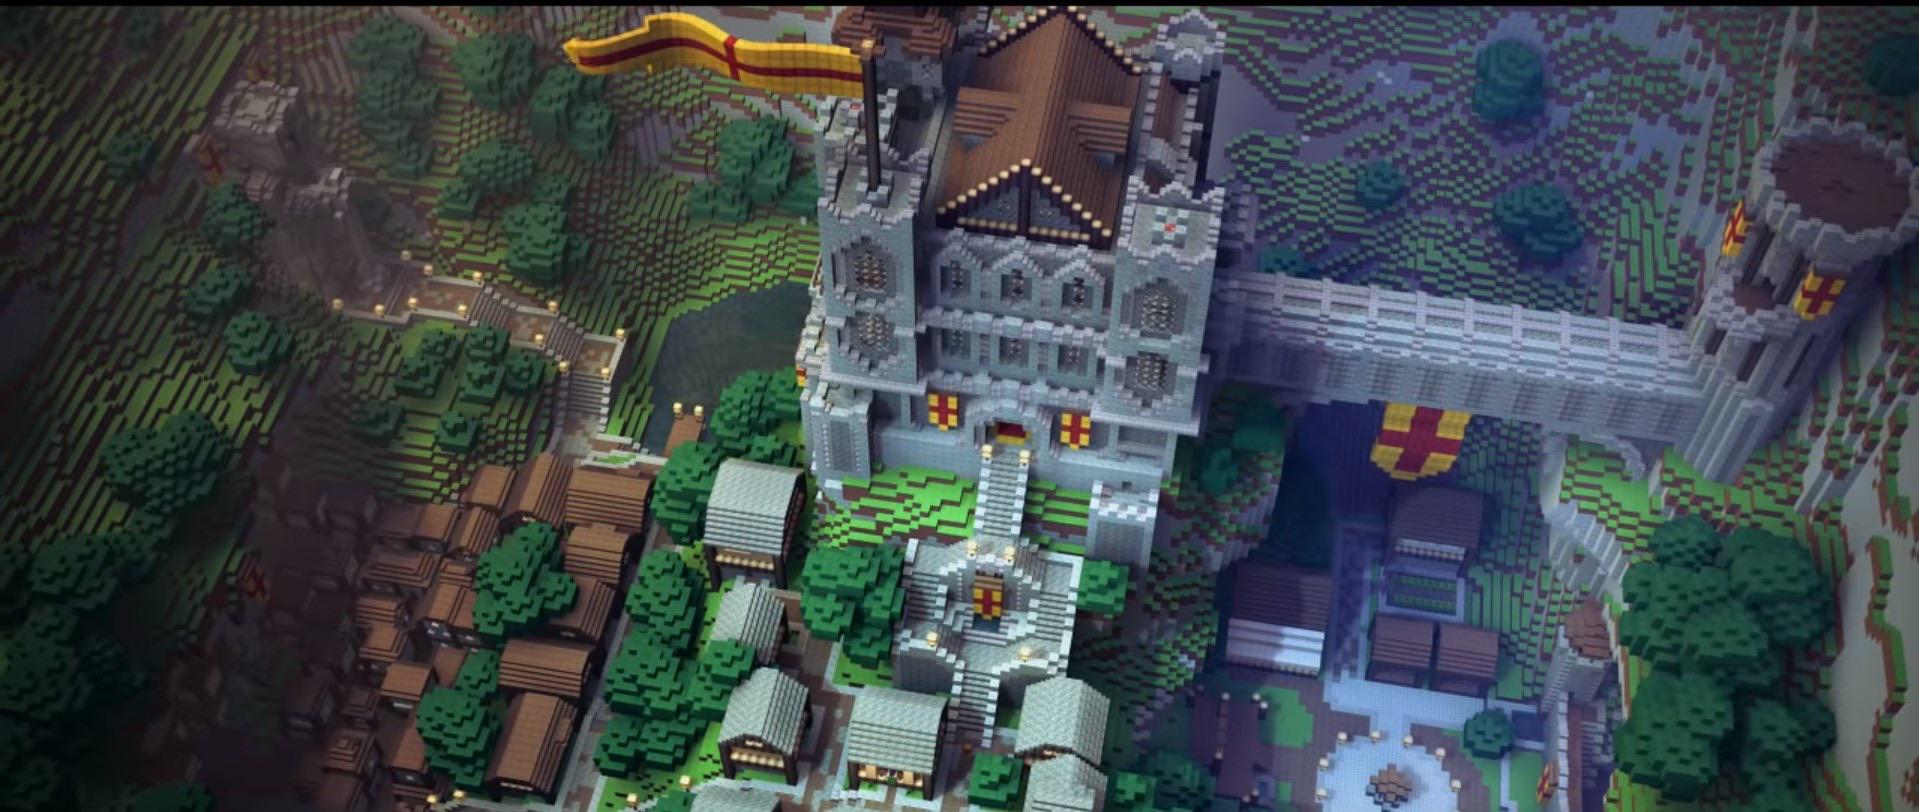 minecraft fallen kingdom map download